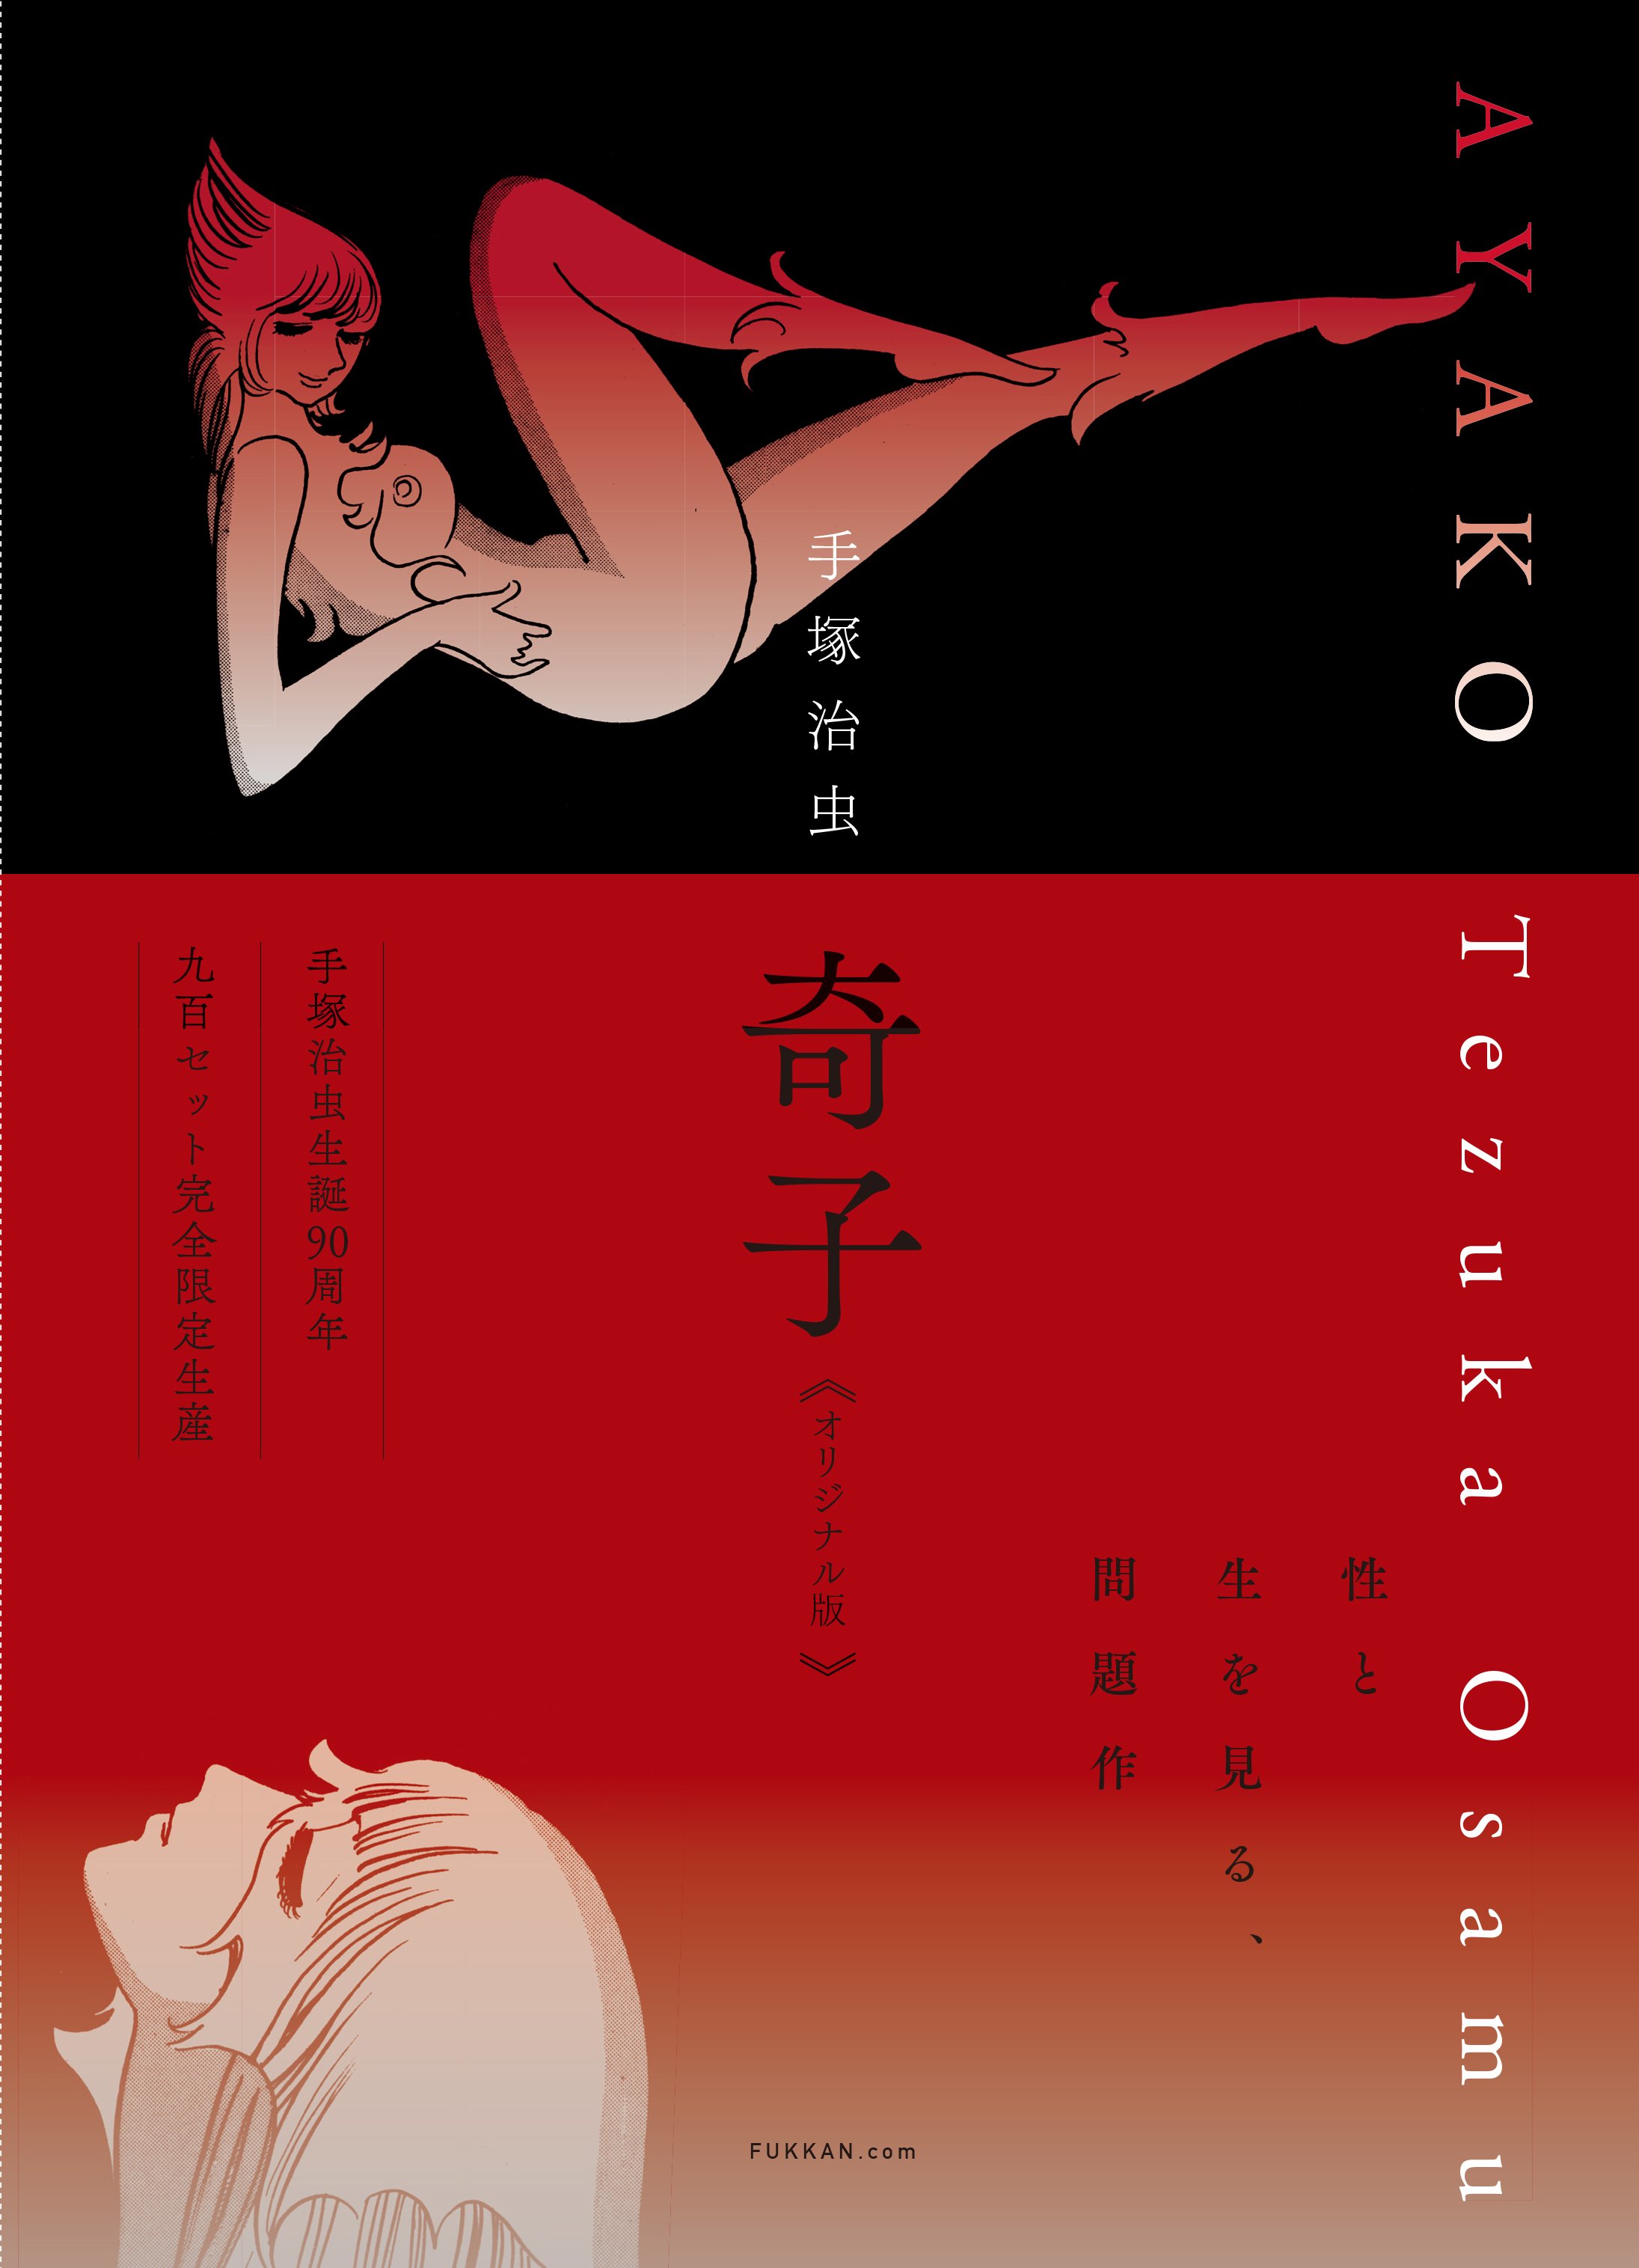 手塚治虫・生誕90周年記念 “幻”の7ページを初収録した『奇子